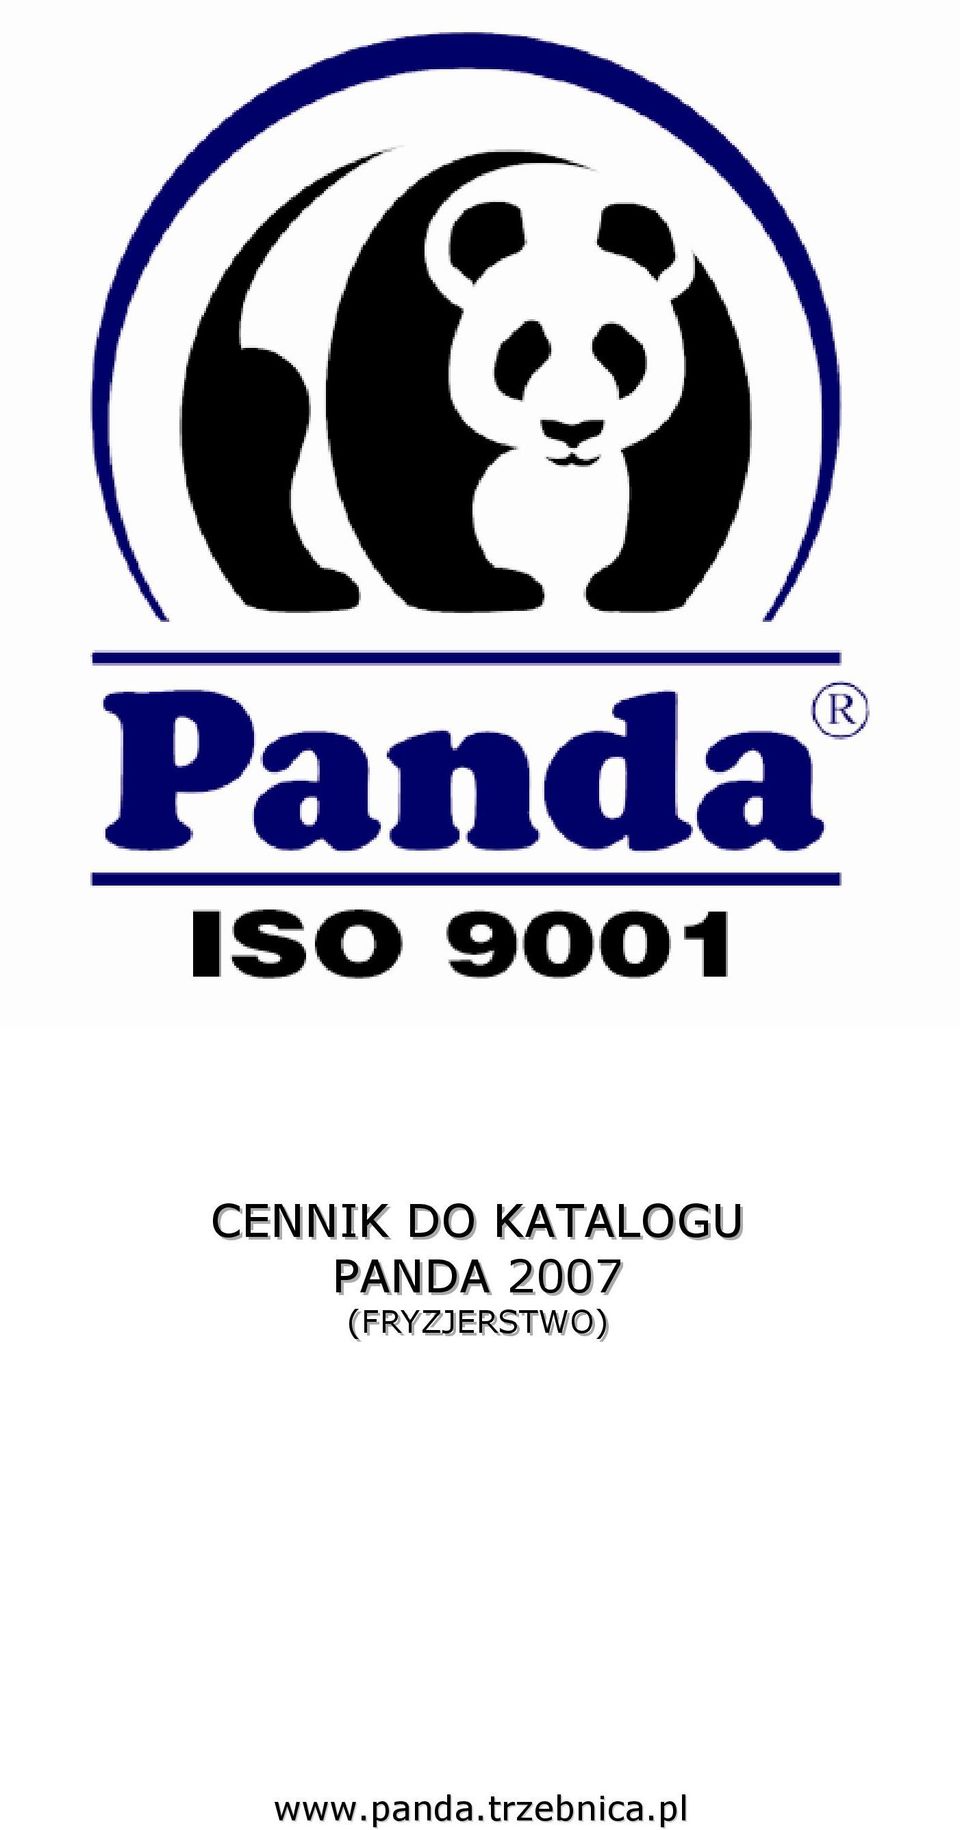 PANDA 2007